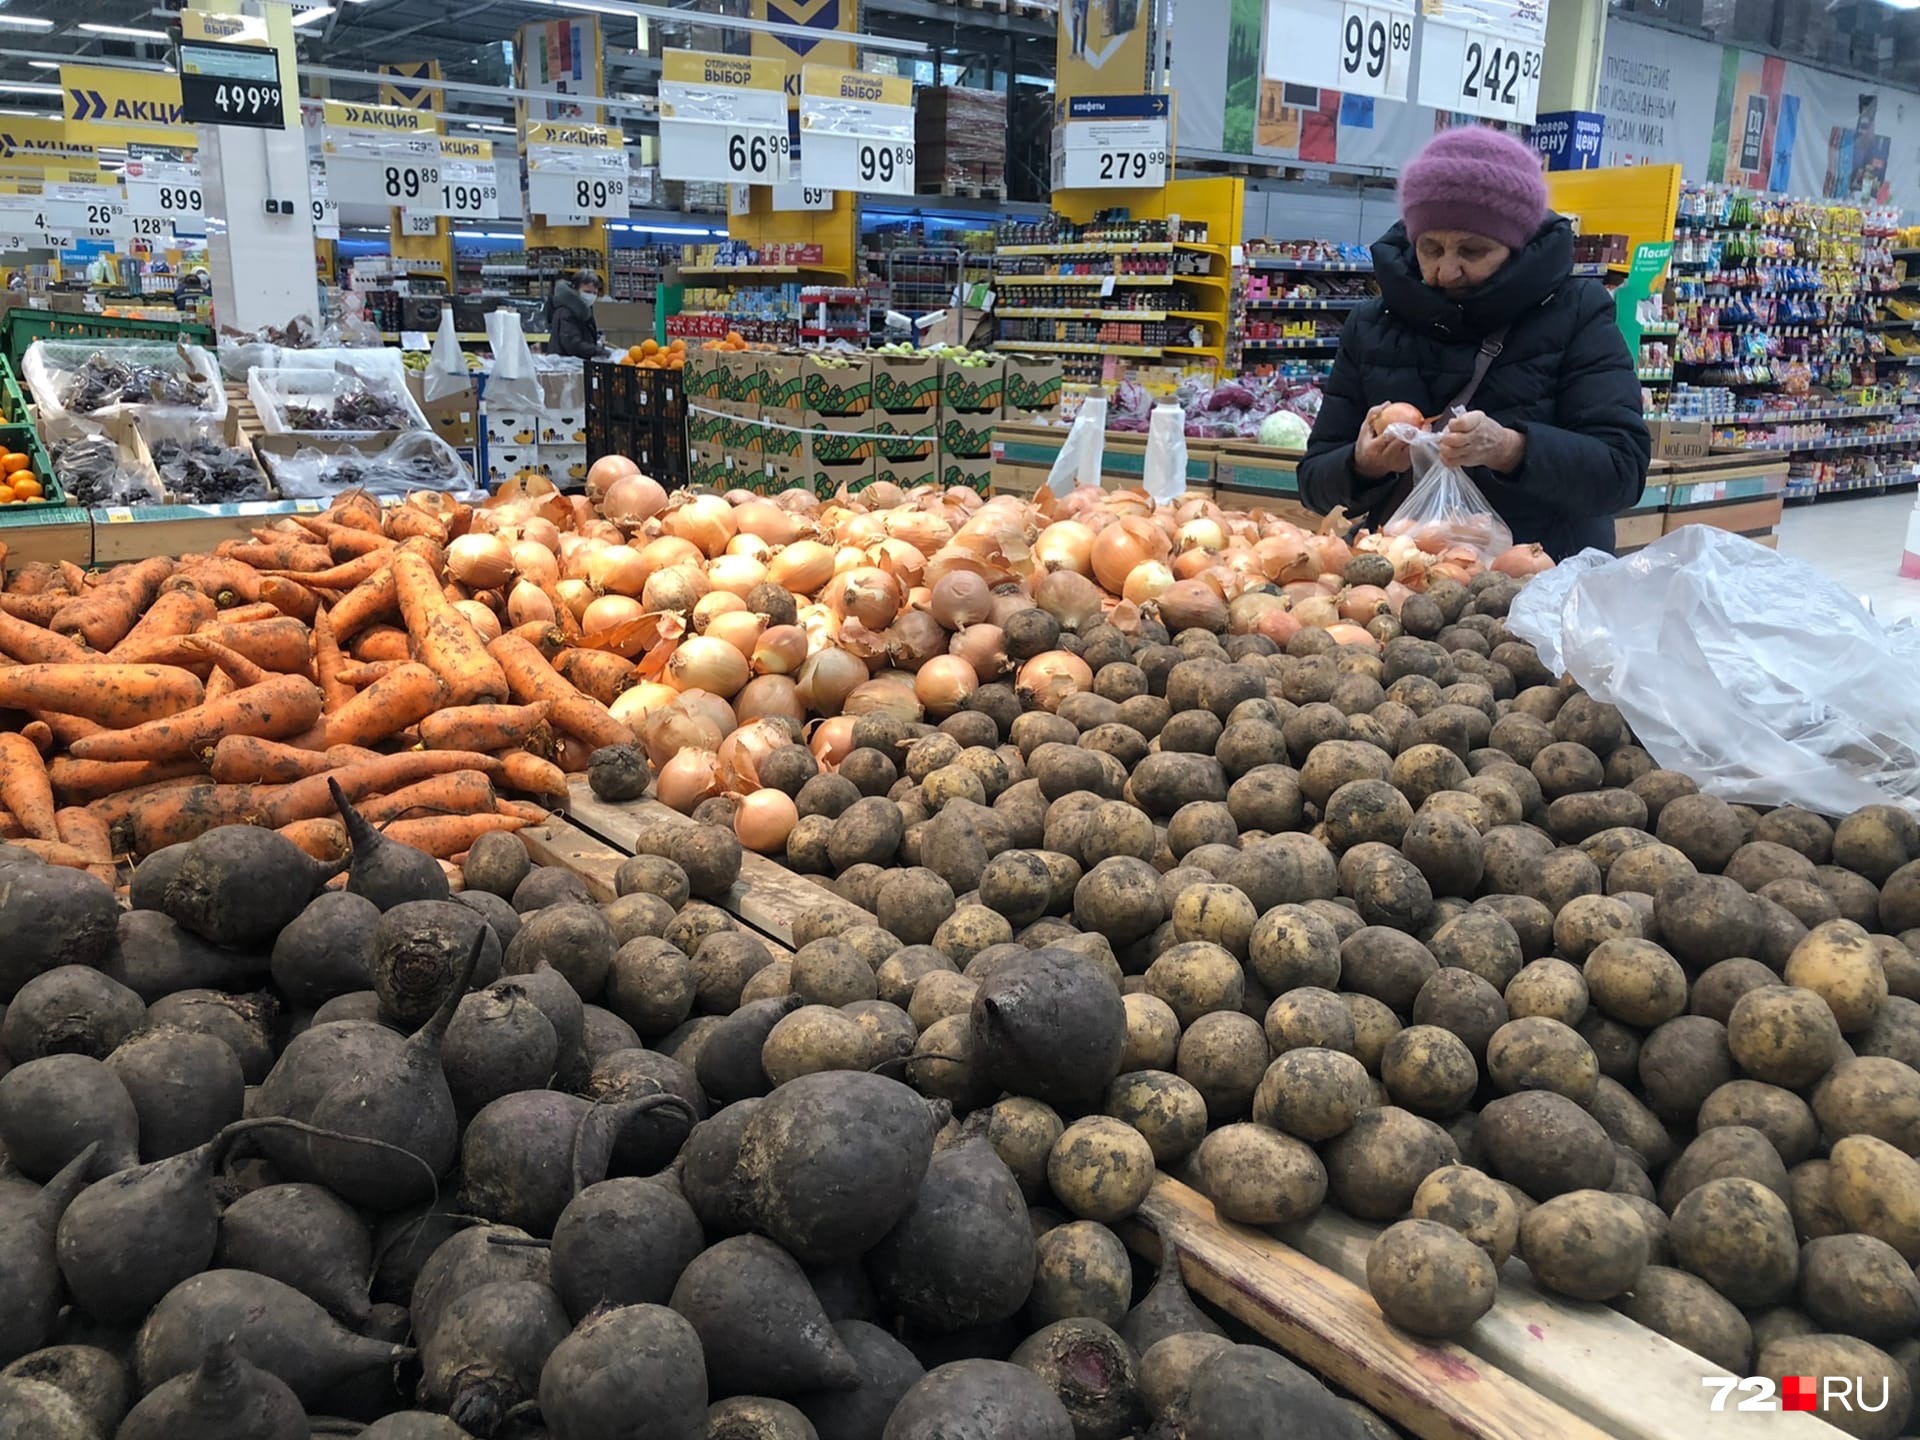 Покупать белокочанную капусту, репчатый лук и морковь в этом супермаркете дешевле, чем в аналогичных торговых точках